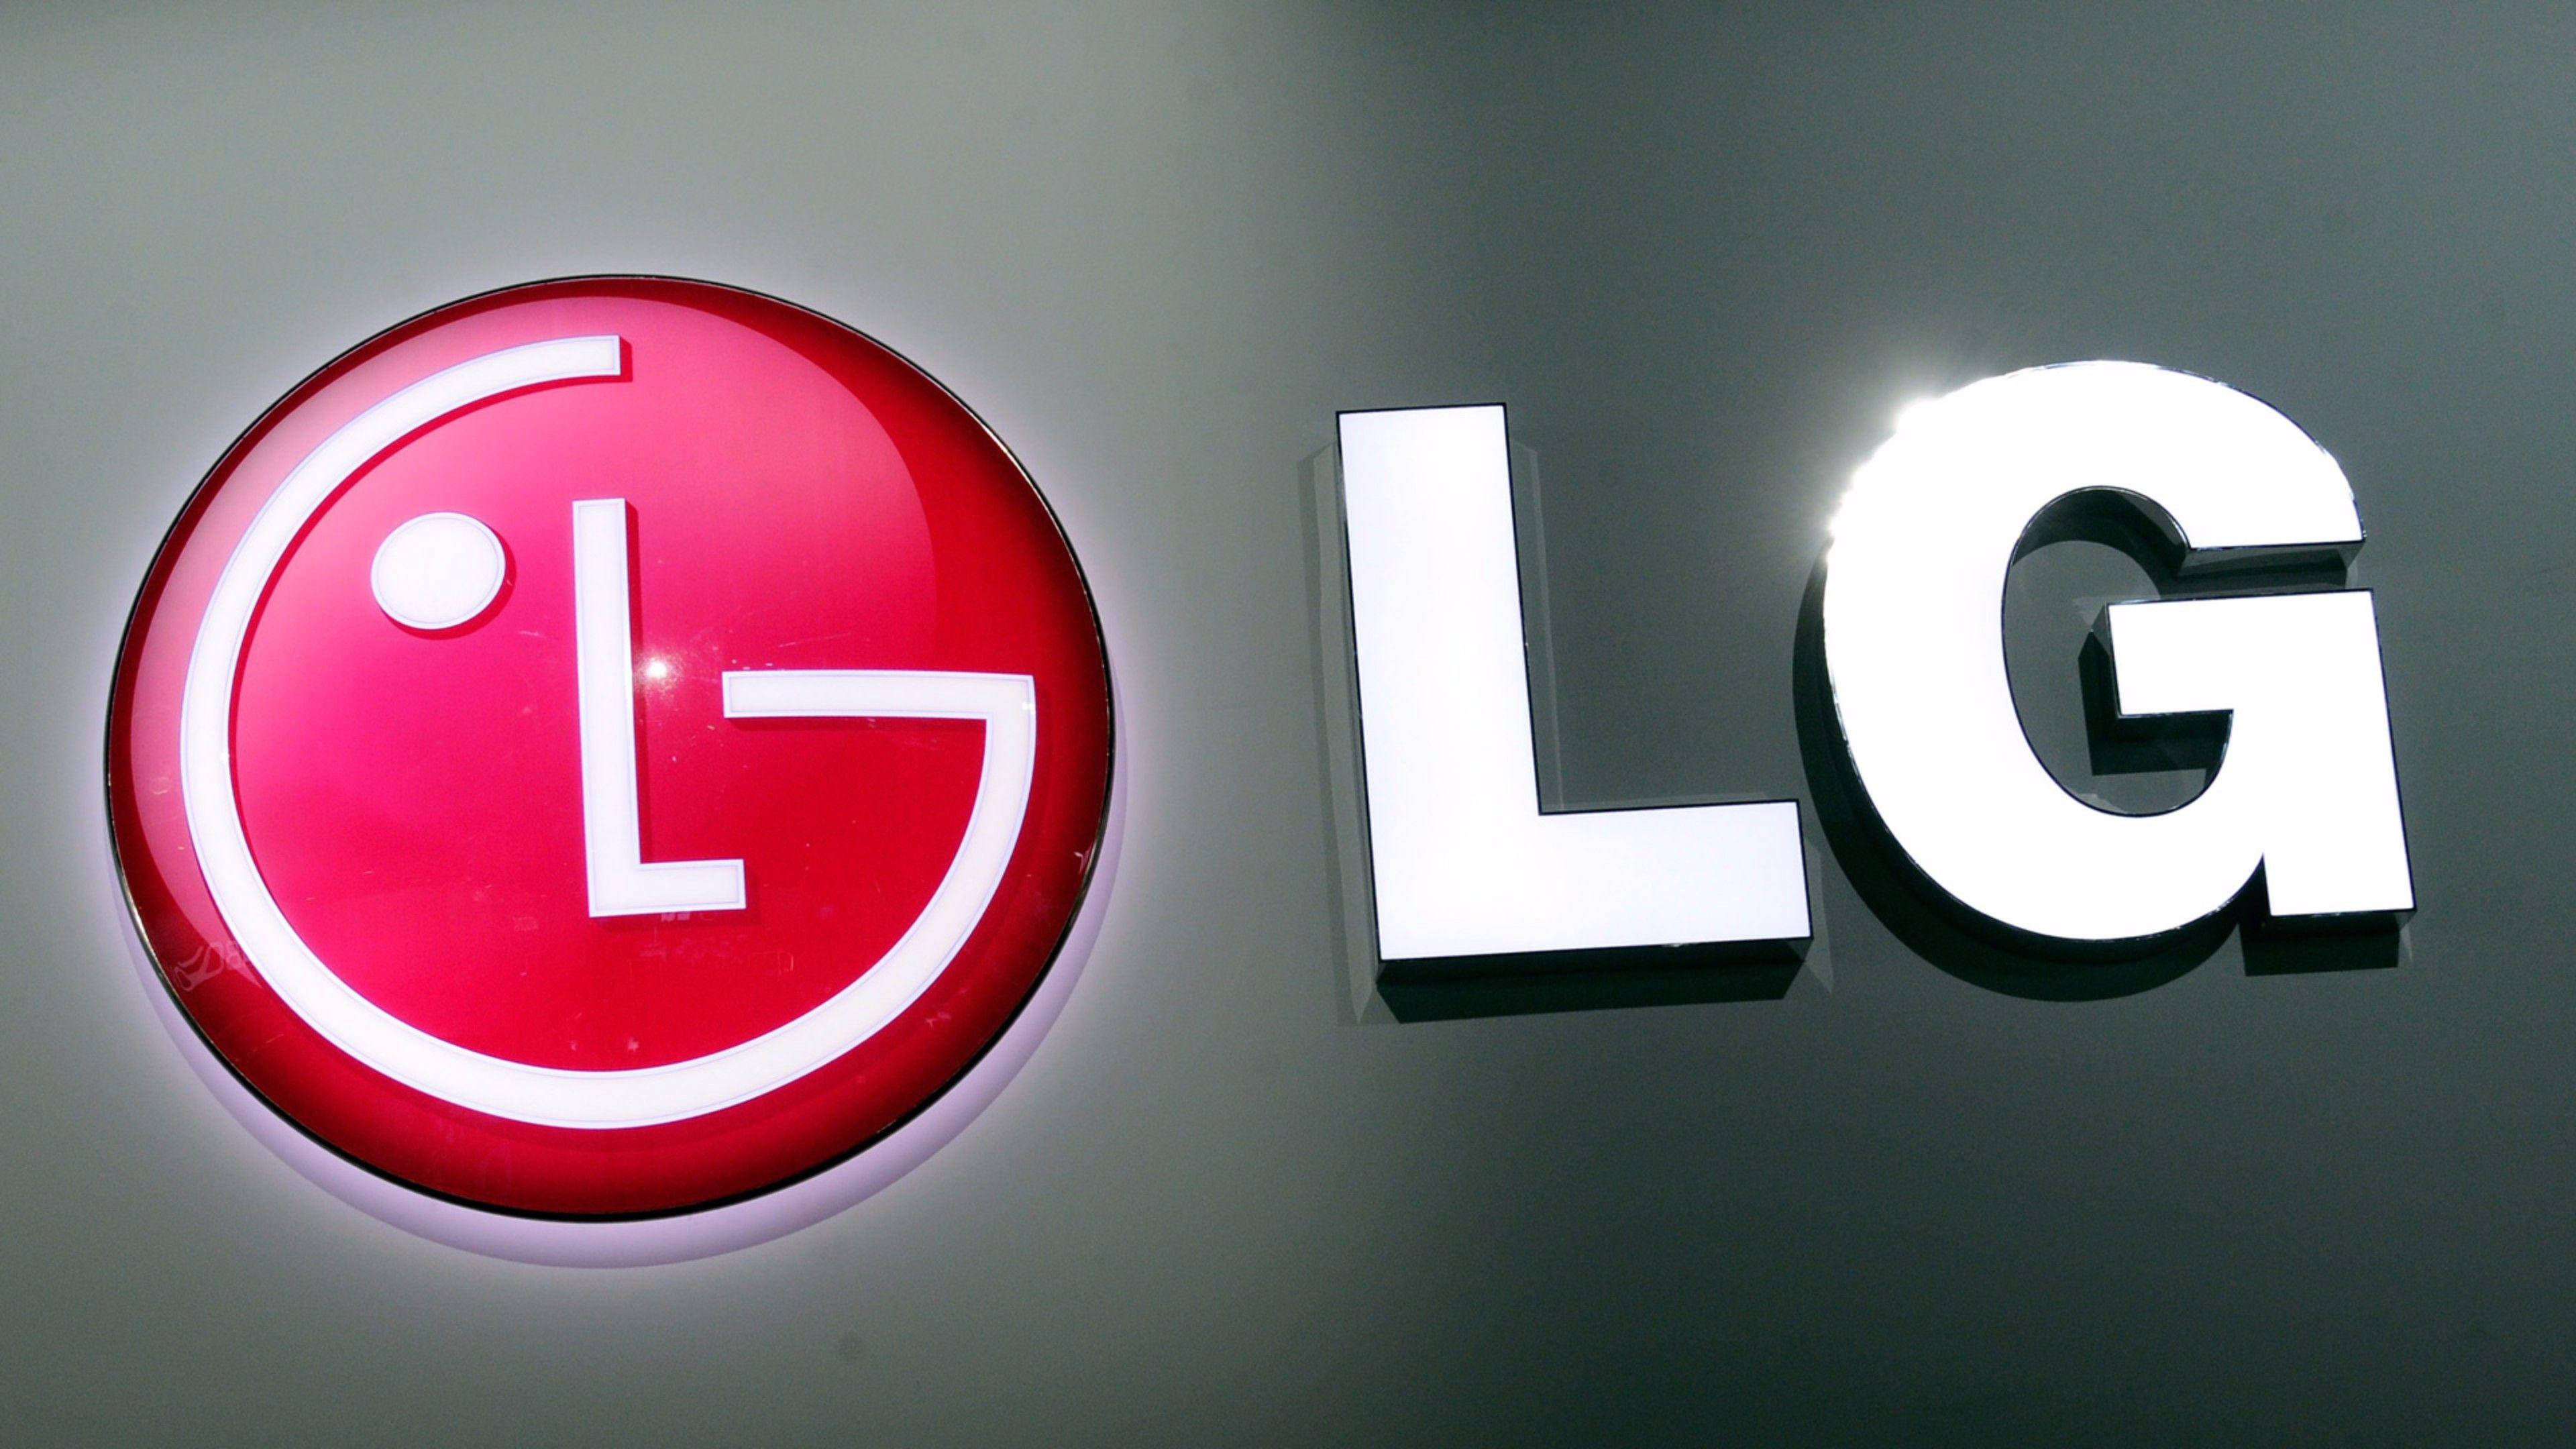 3dlg Tv Logo: 3d Lg Tv-logo Wallpaper